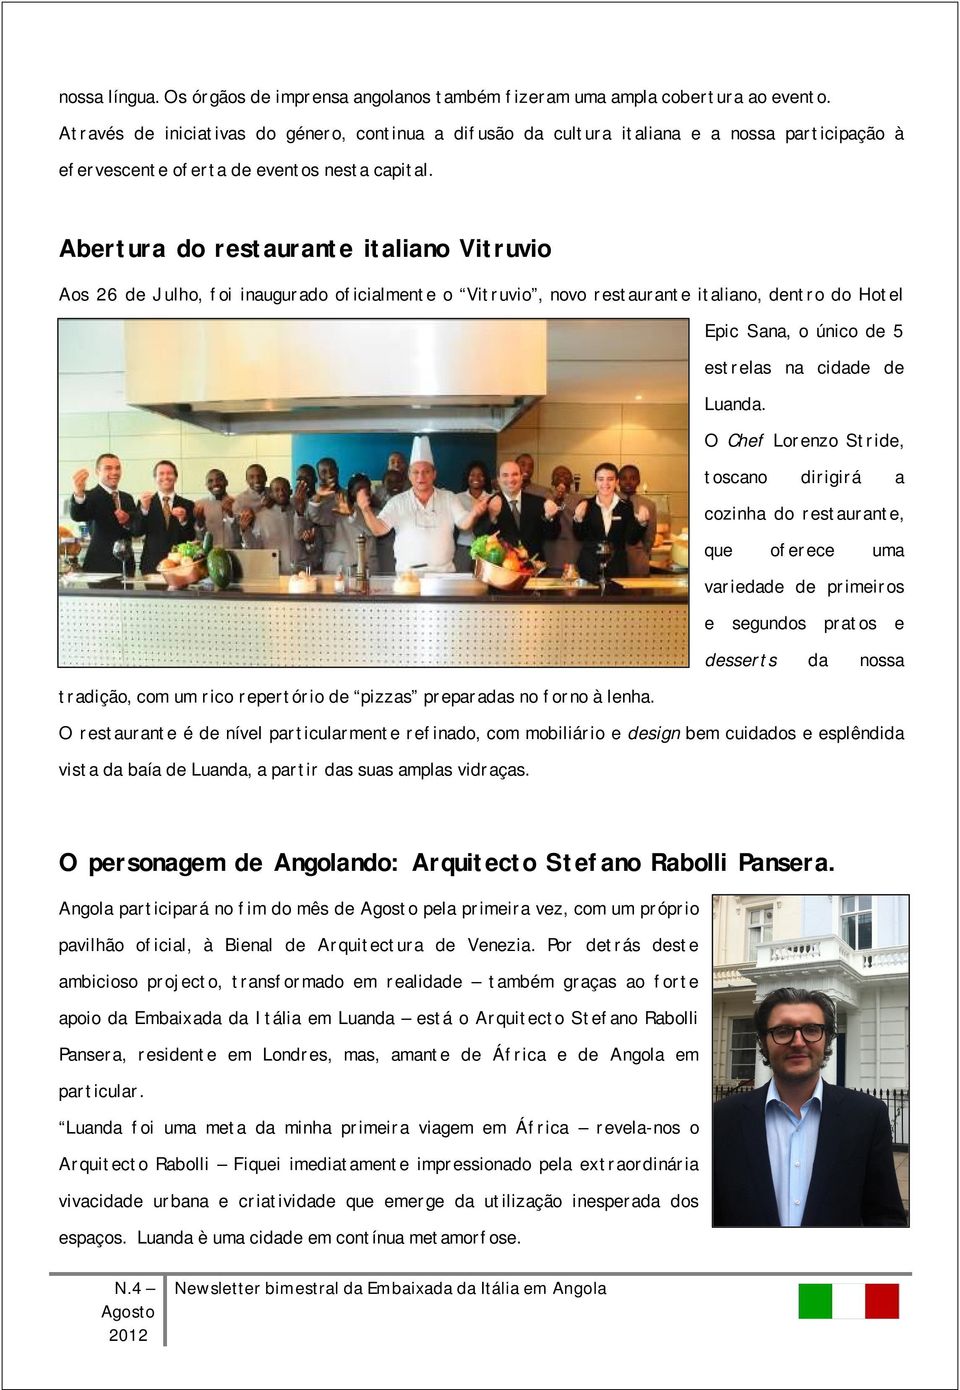 Abertura do restaurante italiano Vitruvio Aos 26 de Julho, foi inaugurado oficialmente o Vitruvio, novo restaurante italiano, dentro do Hotel Epic Sana, o único de 5 estrelas na cidade de Luanda.